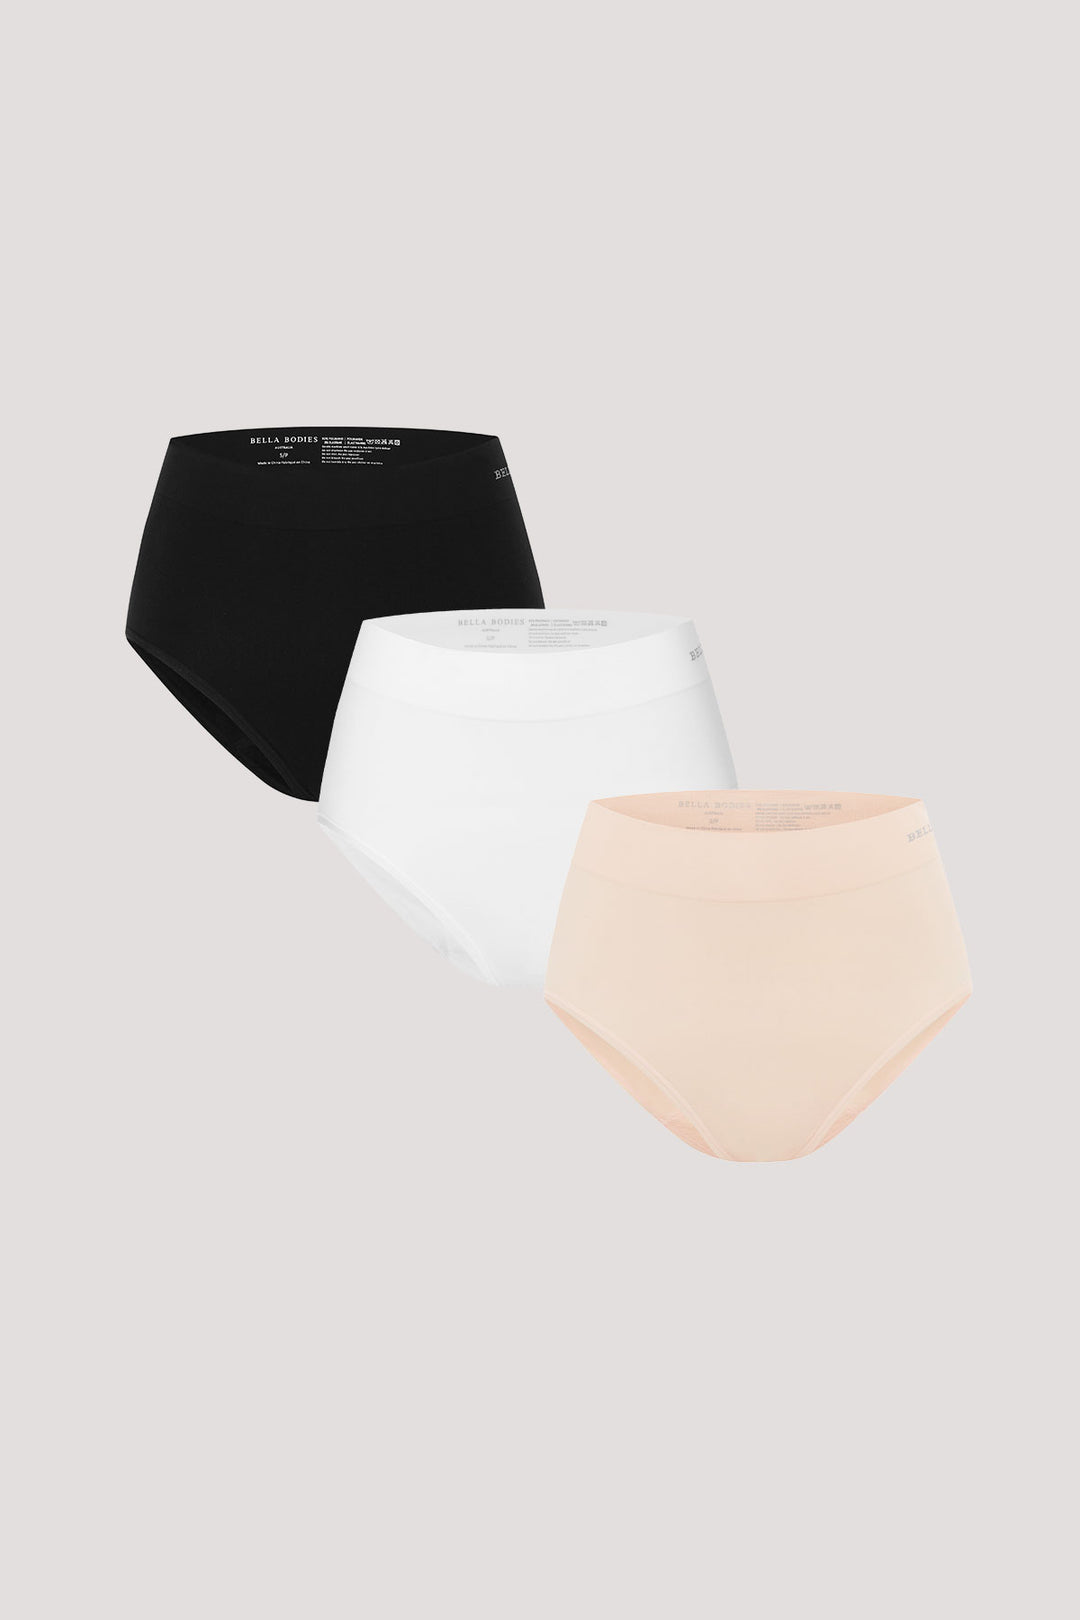 Women's High Waist Underwear 3 pack I Bella Bodies Australia | Black, White and Soft Peach